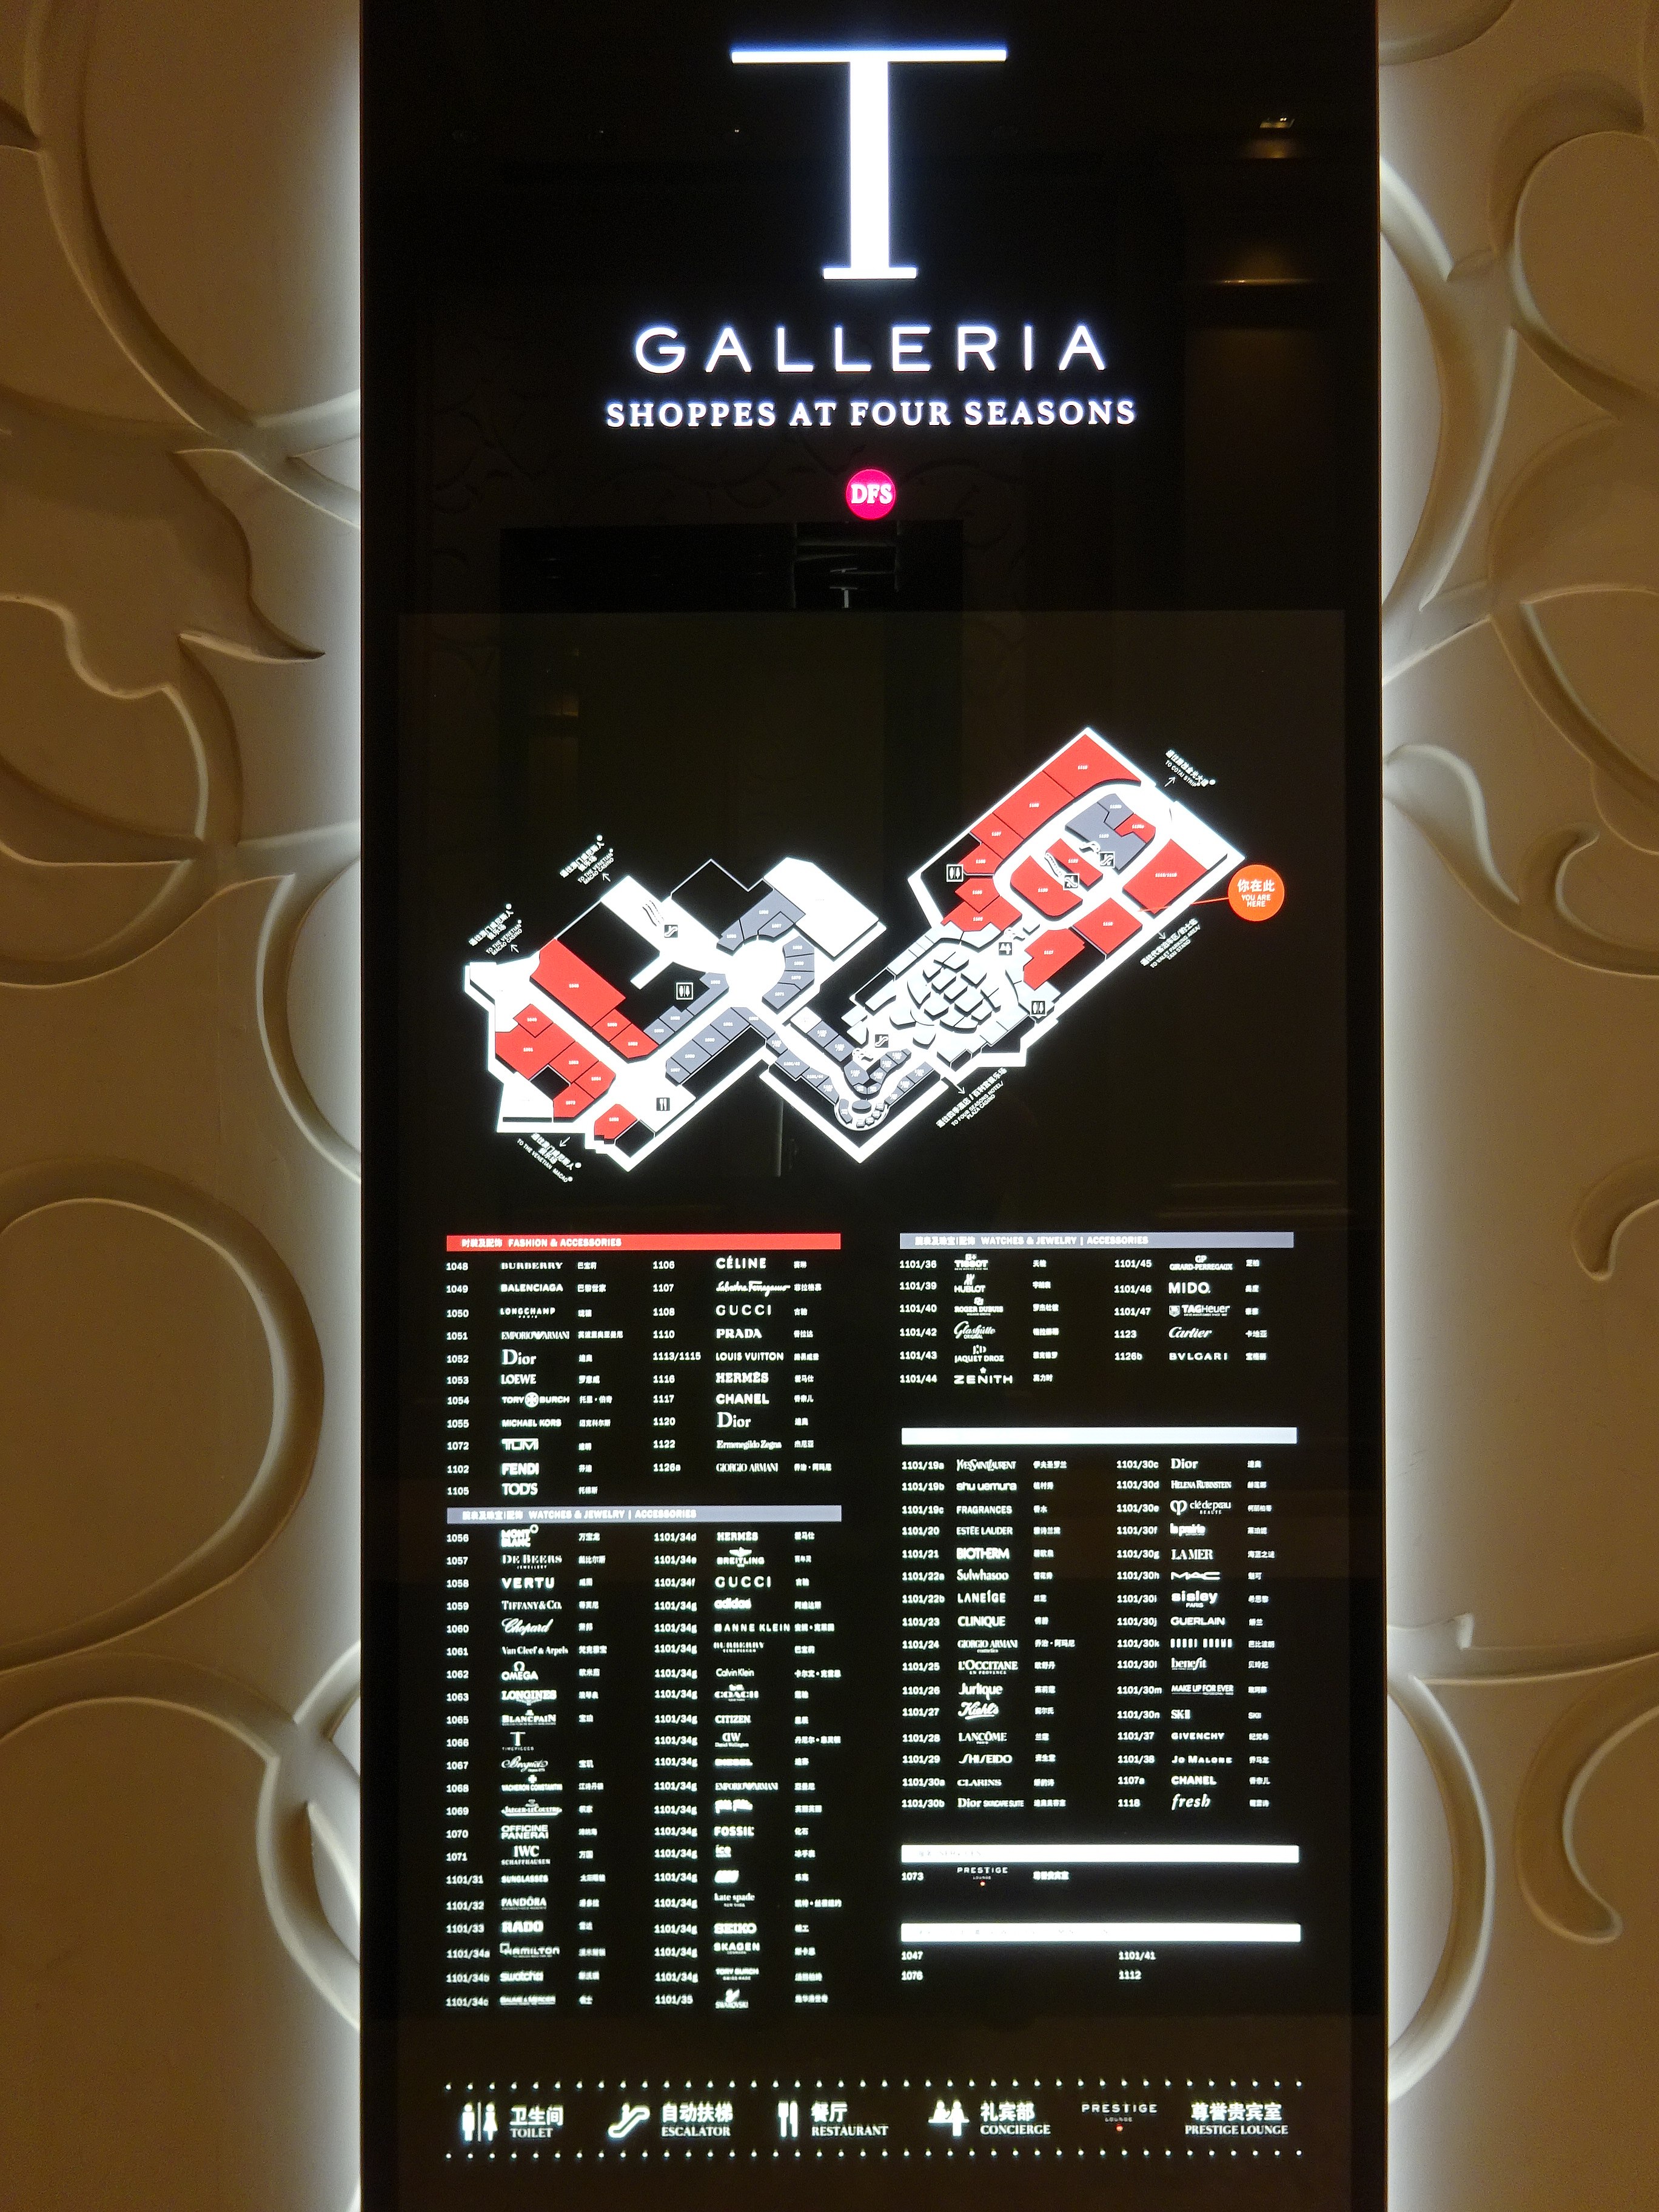 DFS Galleria - Wikidata